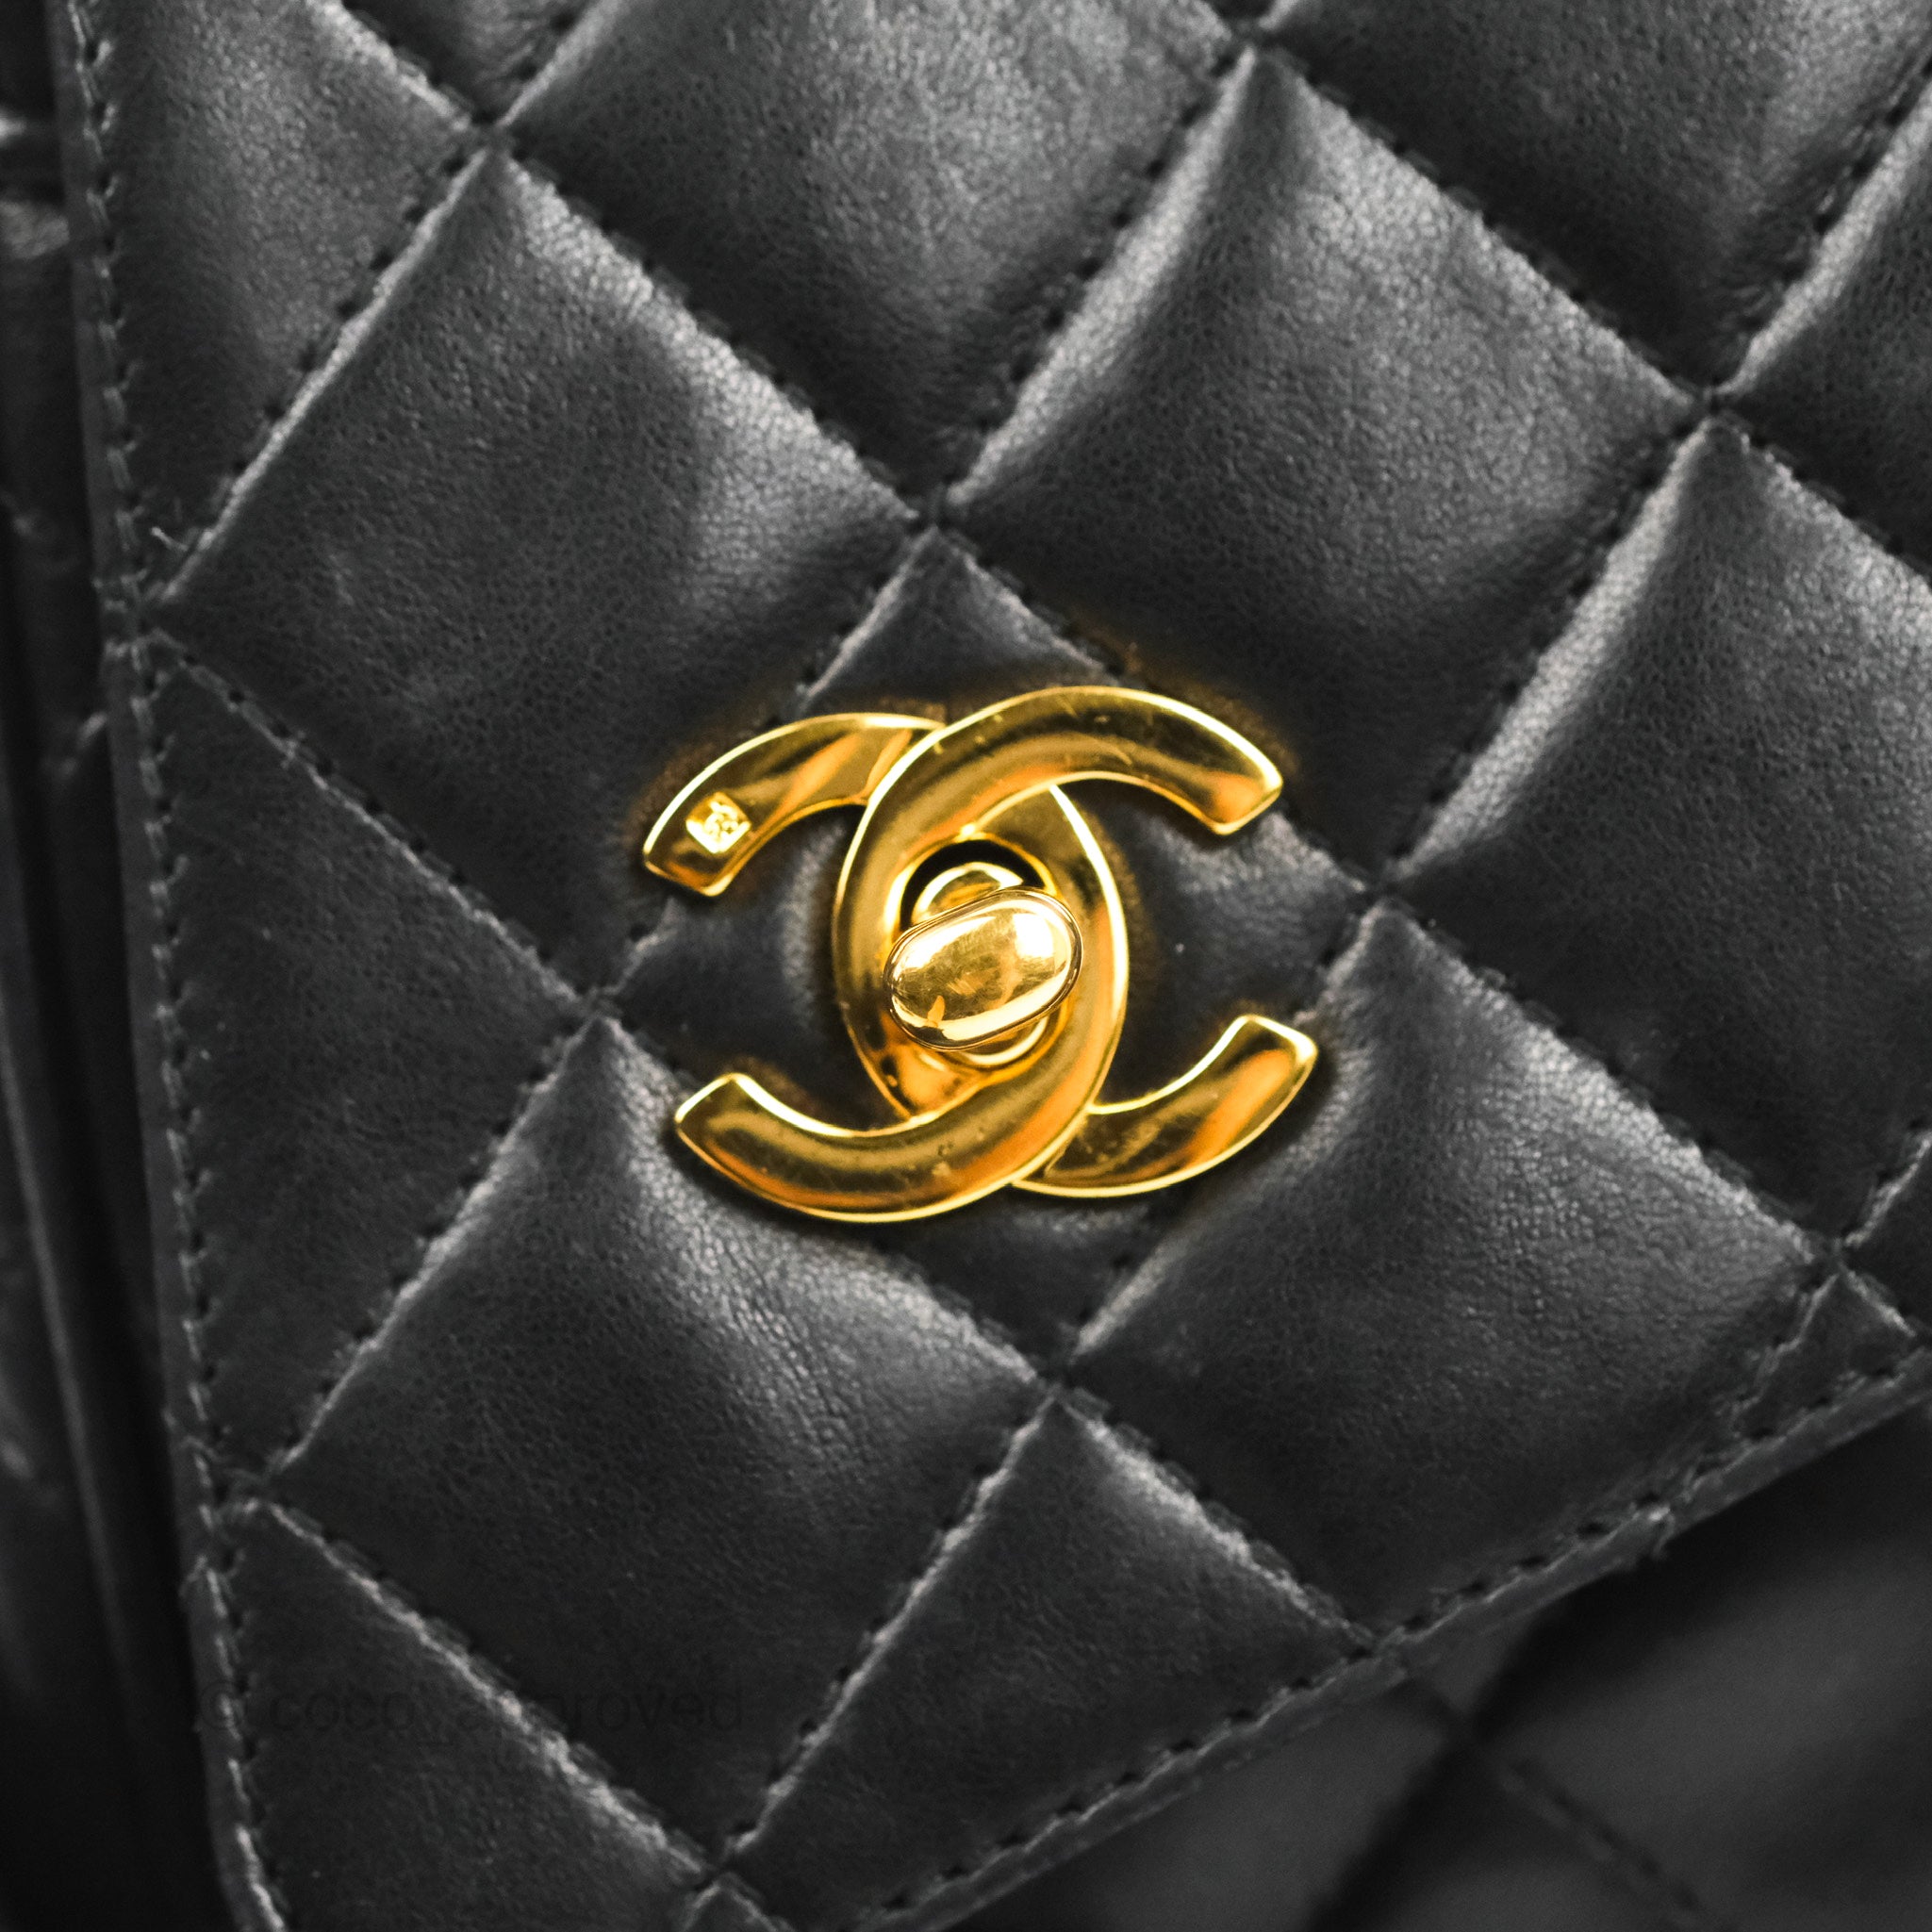 Chanel Vintage Camera Bag Black Lambskin 24K Gold Hardware – Coco